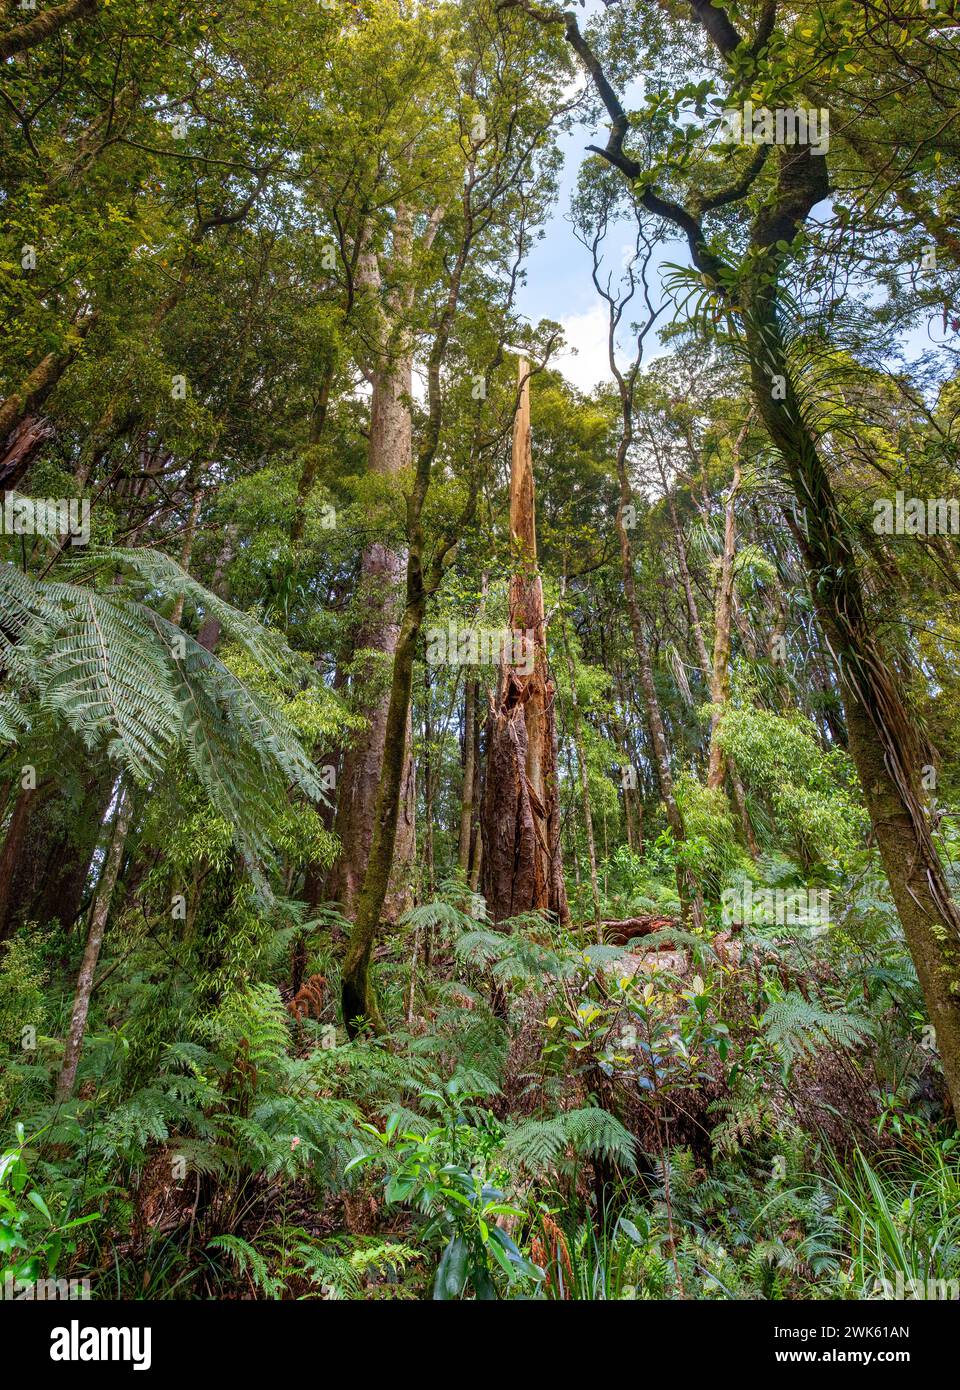 La foresta pluviale temperata di Trounson Kauri Park, te Tai Tokerau / regione Northland, te Ika-a-Maui / Isola del Nord, Aotearoa / nuova Zelanda. Trounson K. Foto Stock